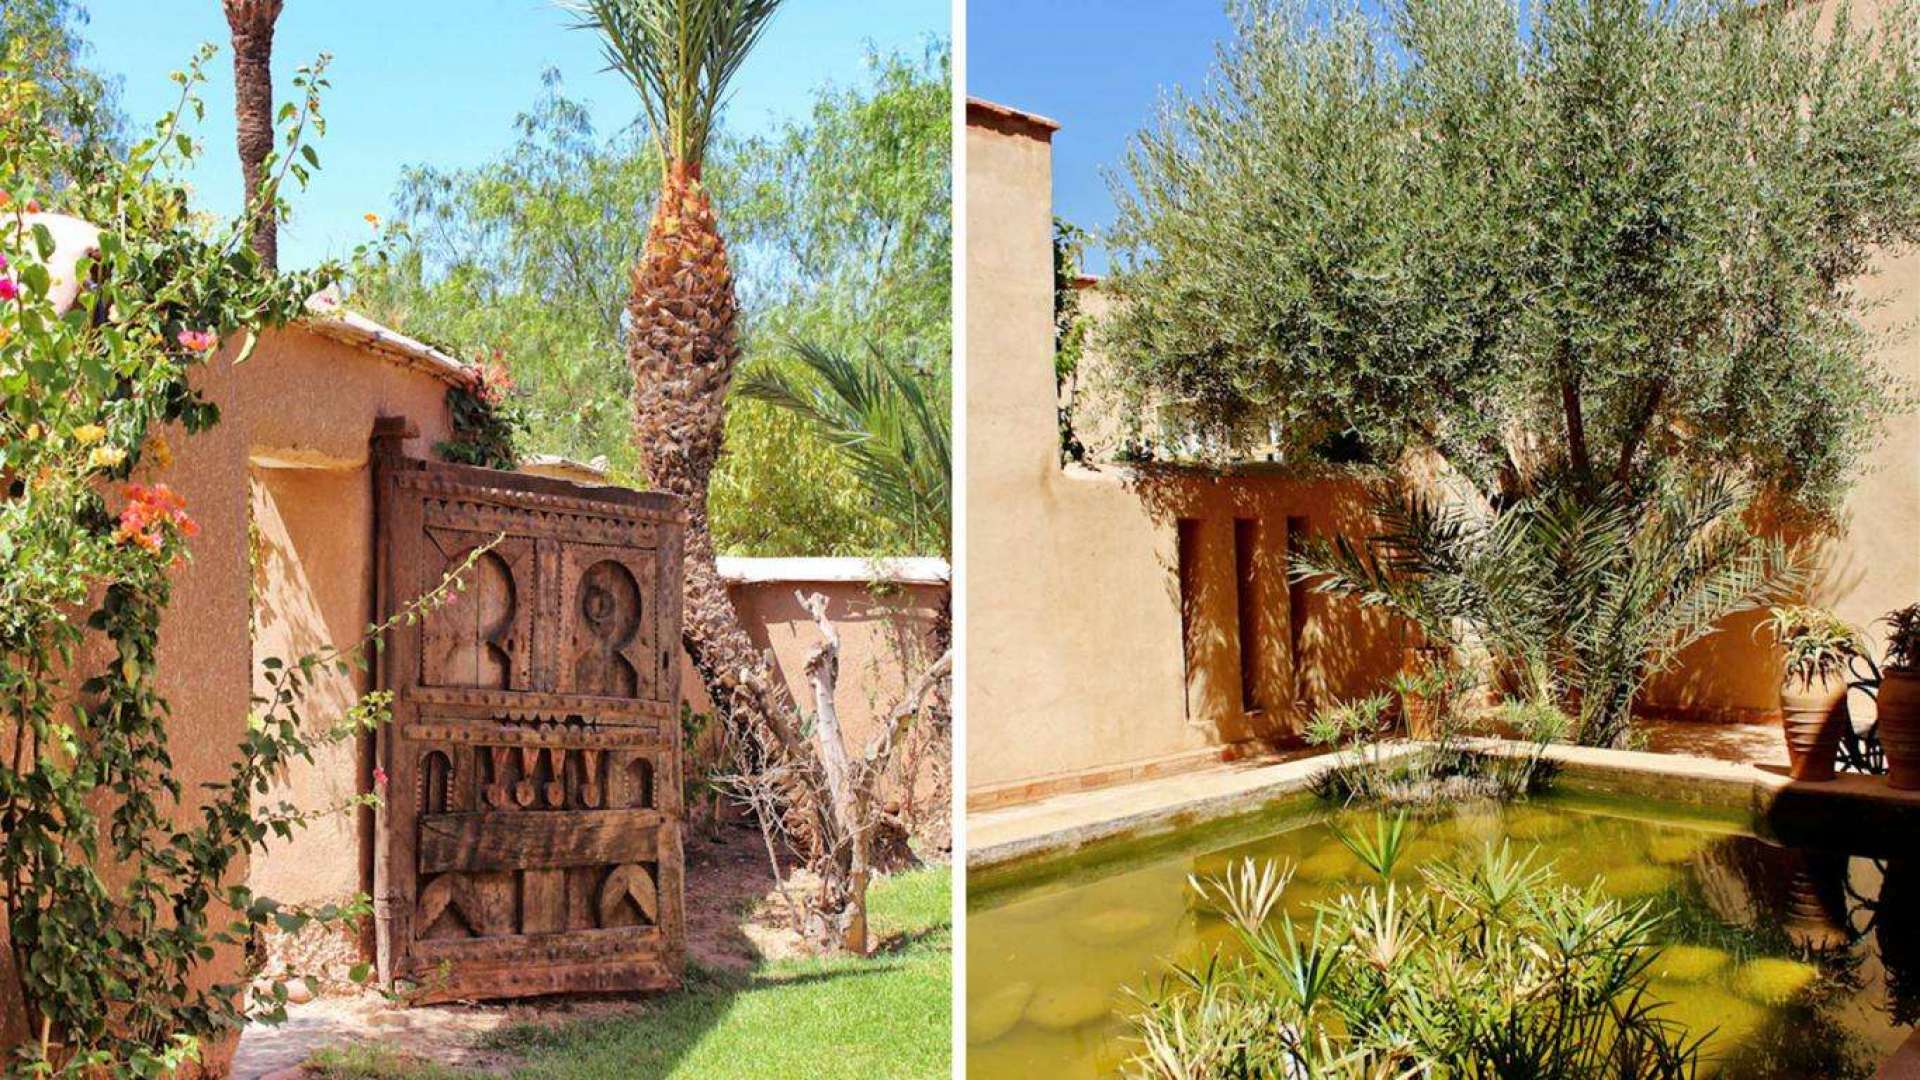 Location de vacances,Villa,Villa 10 chambres avec services hôteliers dans la Palmeraie de Marrakech ,Marrakech,Bab Atlas